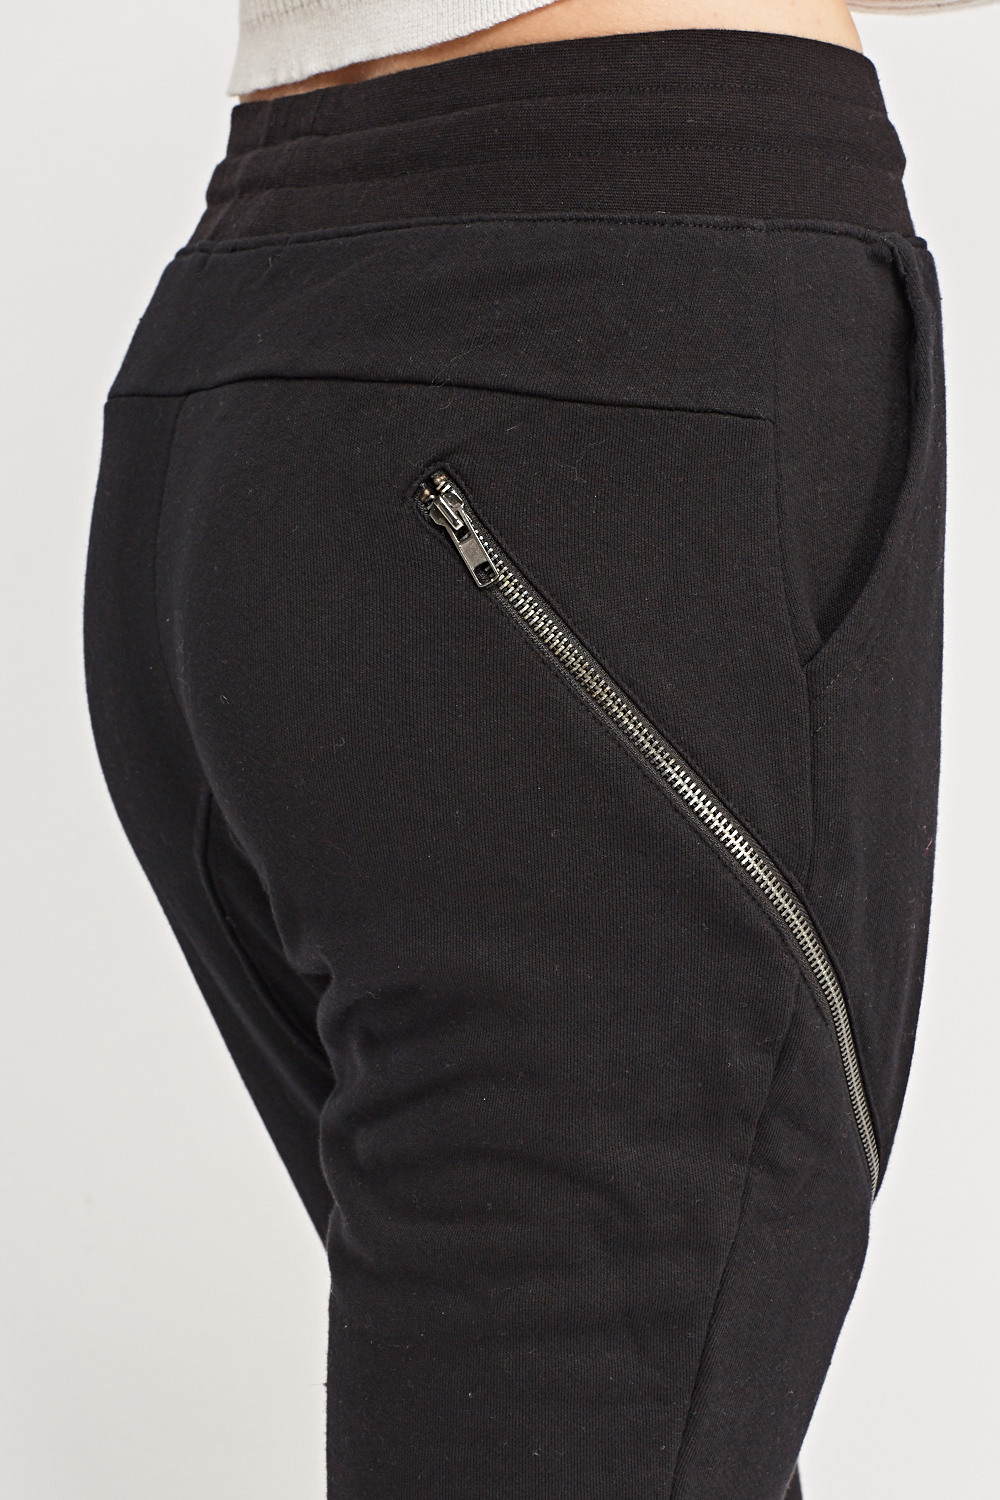 Zip Detail Joggings Pants - Just £5